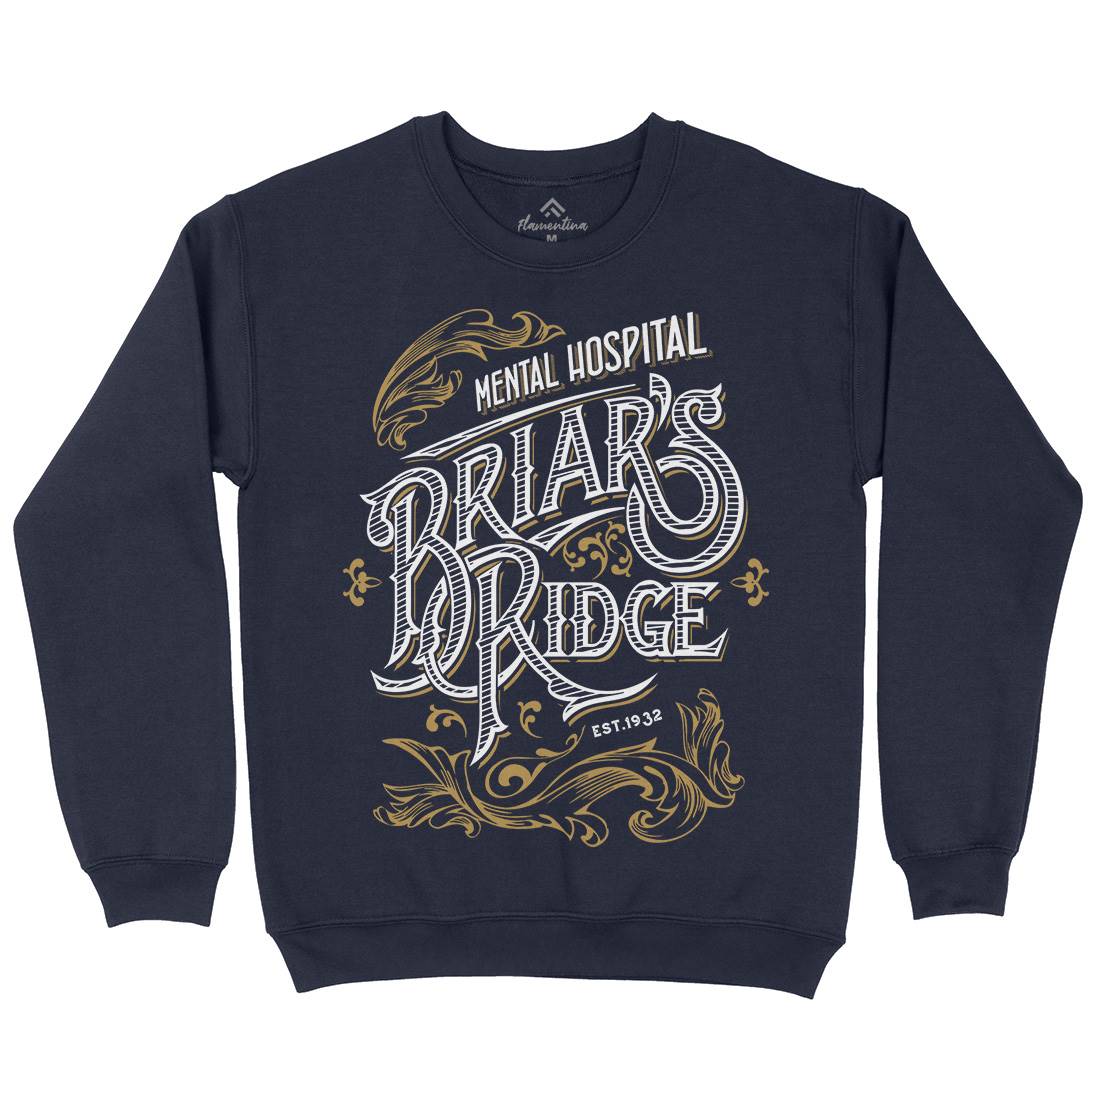 Briar Ridge Mens Crew Neck Sweatshirt Retro D367